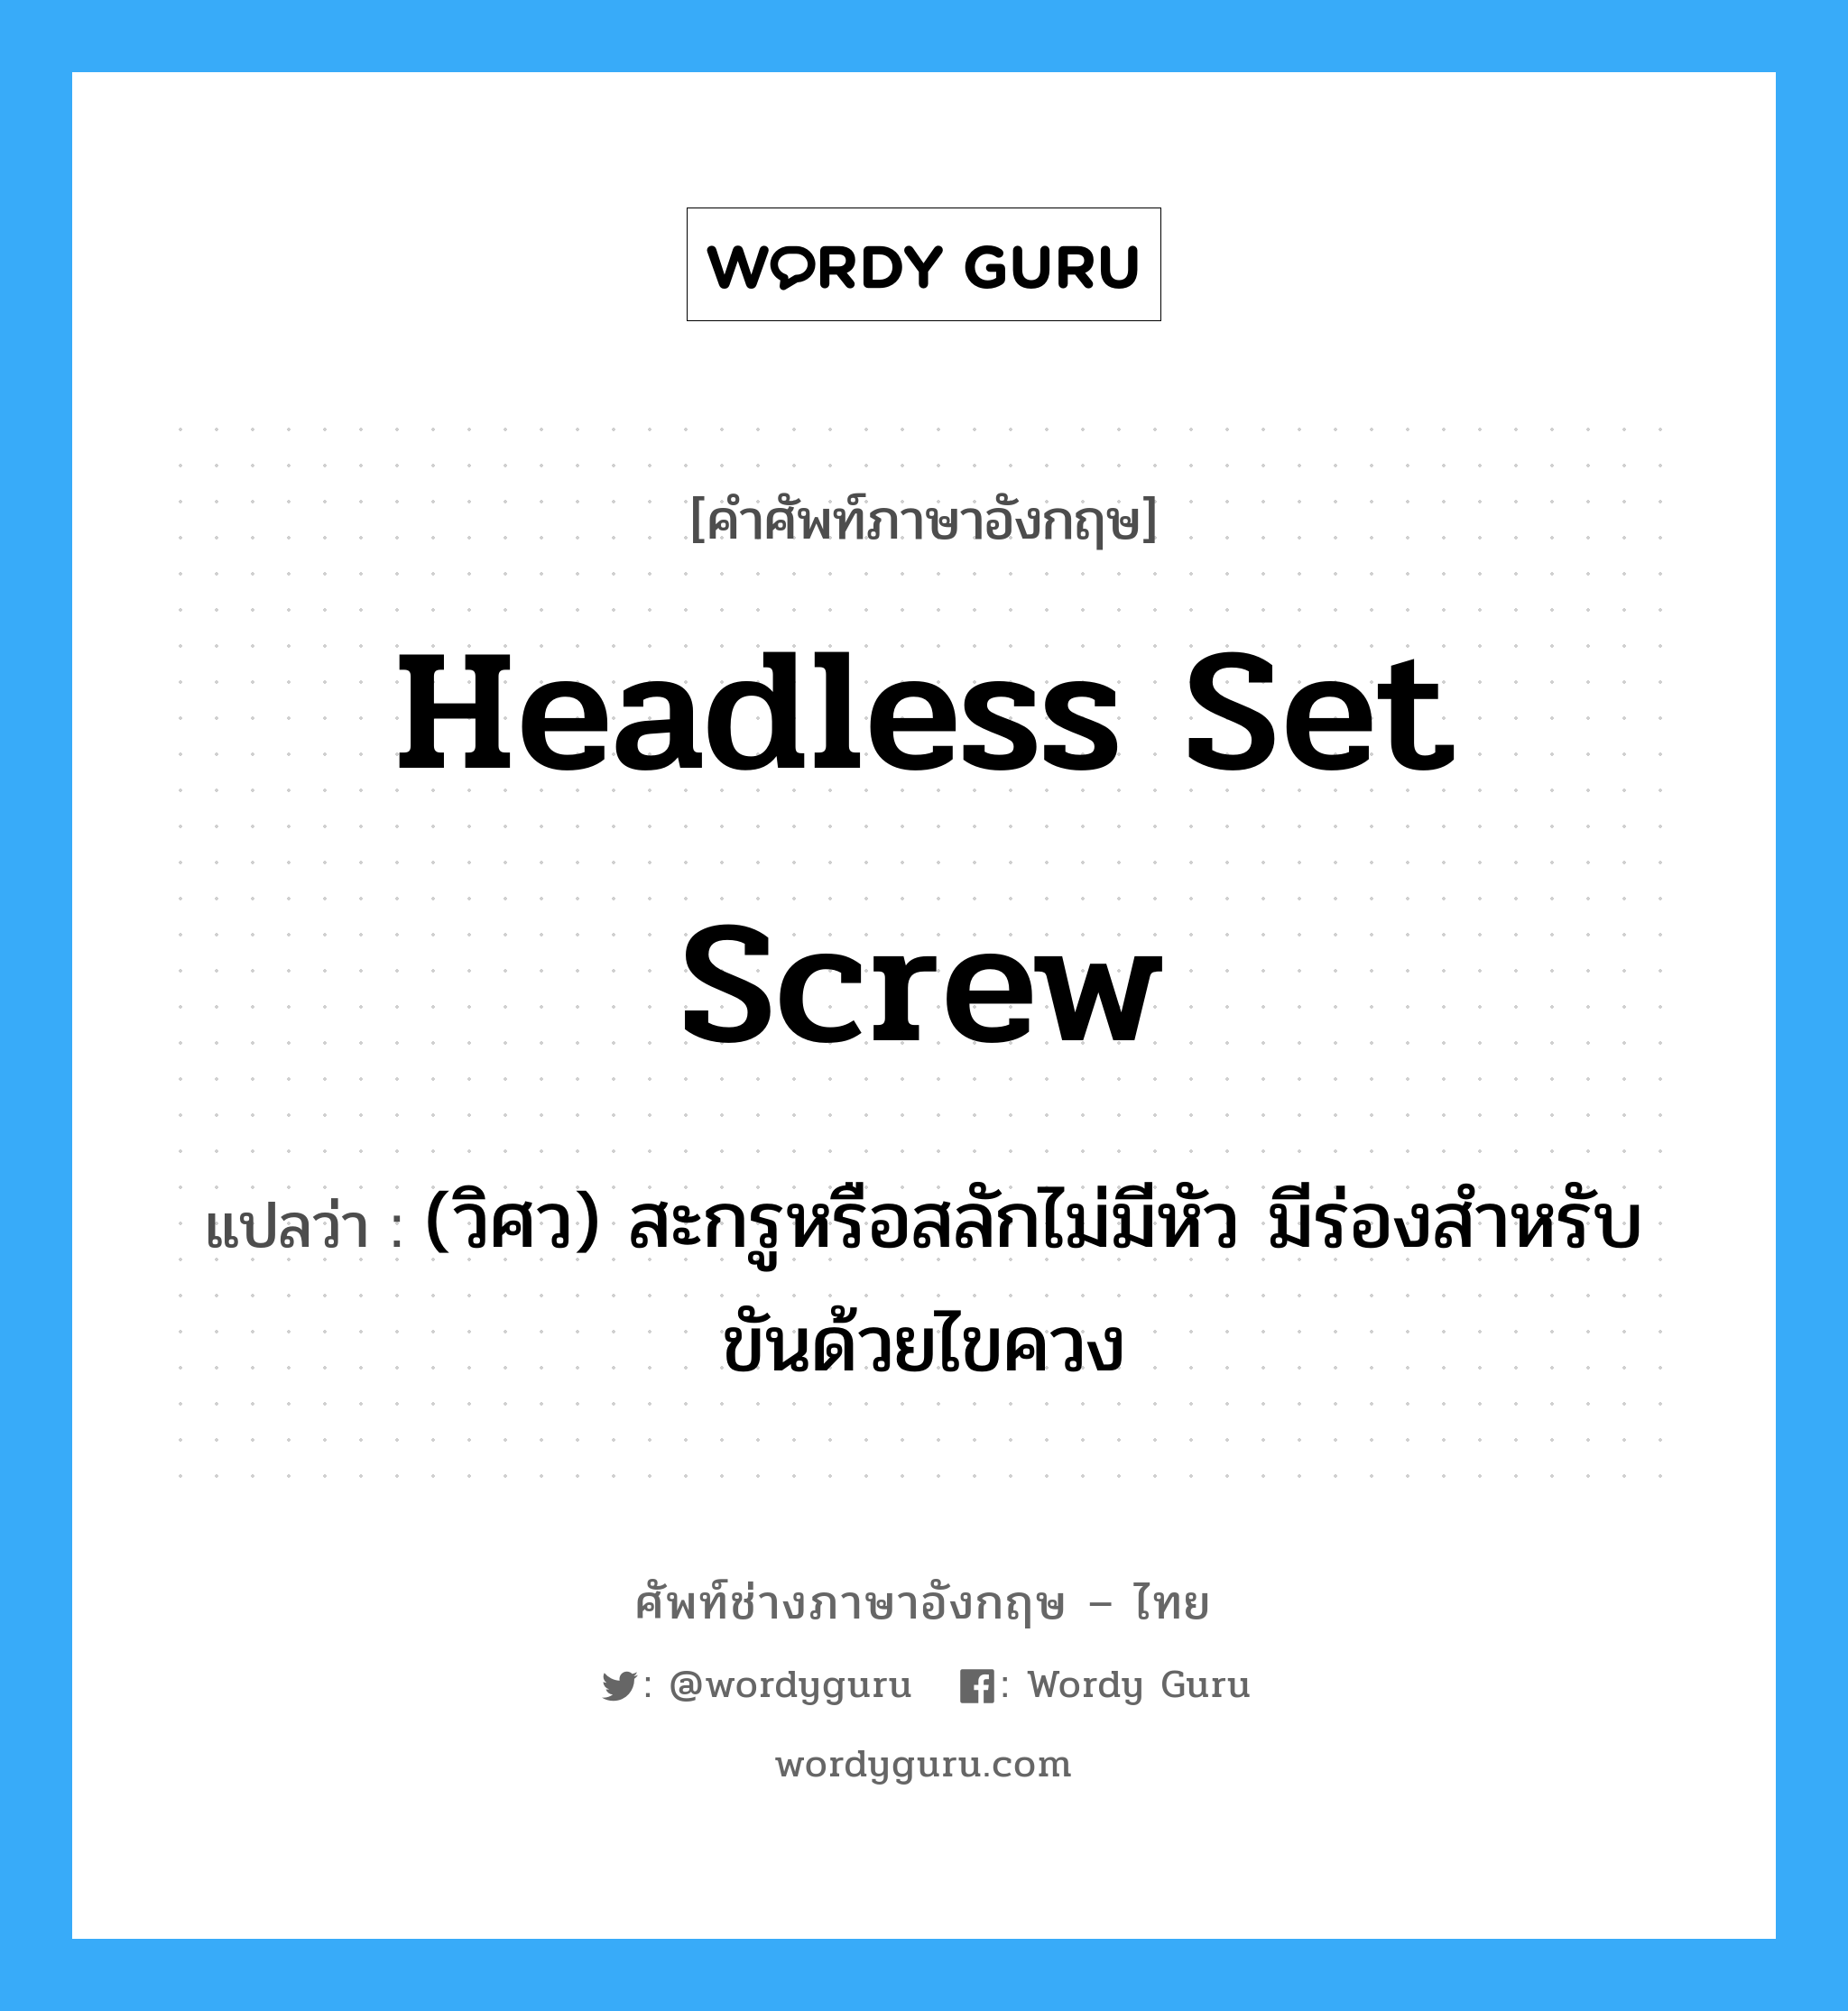 headless set screw แปลว่า?, คำศัพท์ช่างภาษาอังกฤษ - ไทย headless set screw คำศัพท์ภาษาอังกฤษ headless set screw แปลว่า (วิศว) สะกรูหรือสลักไม่มีหัว มีร่องสำหรับขันด้วยไขควง